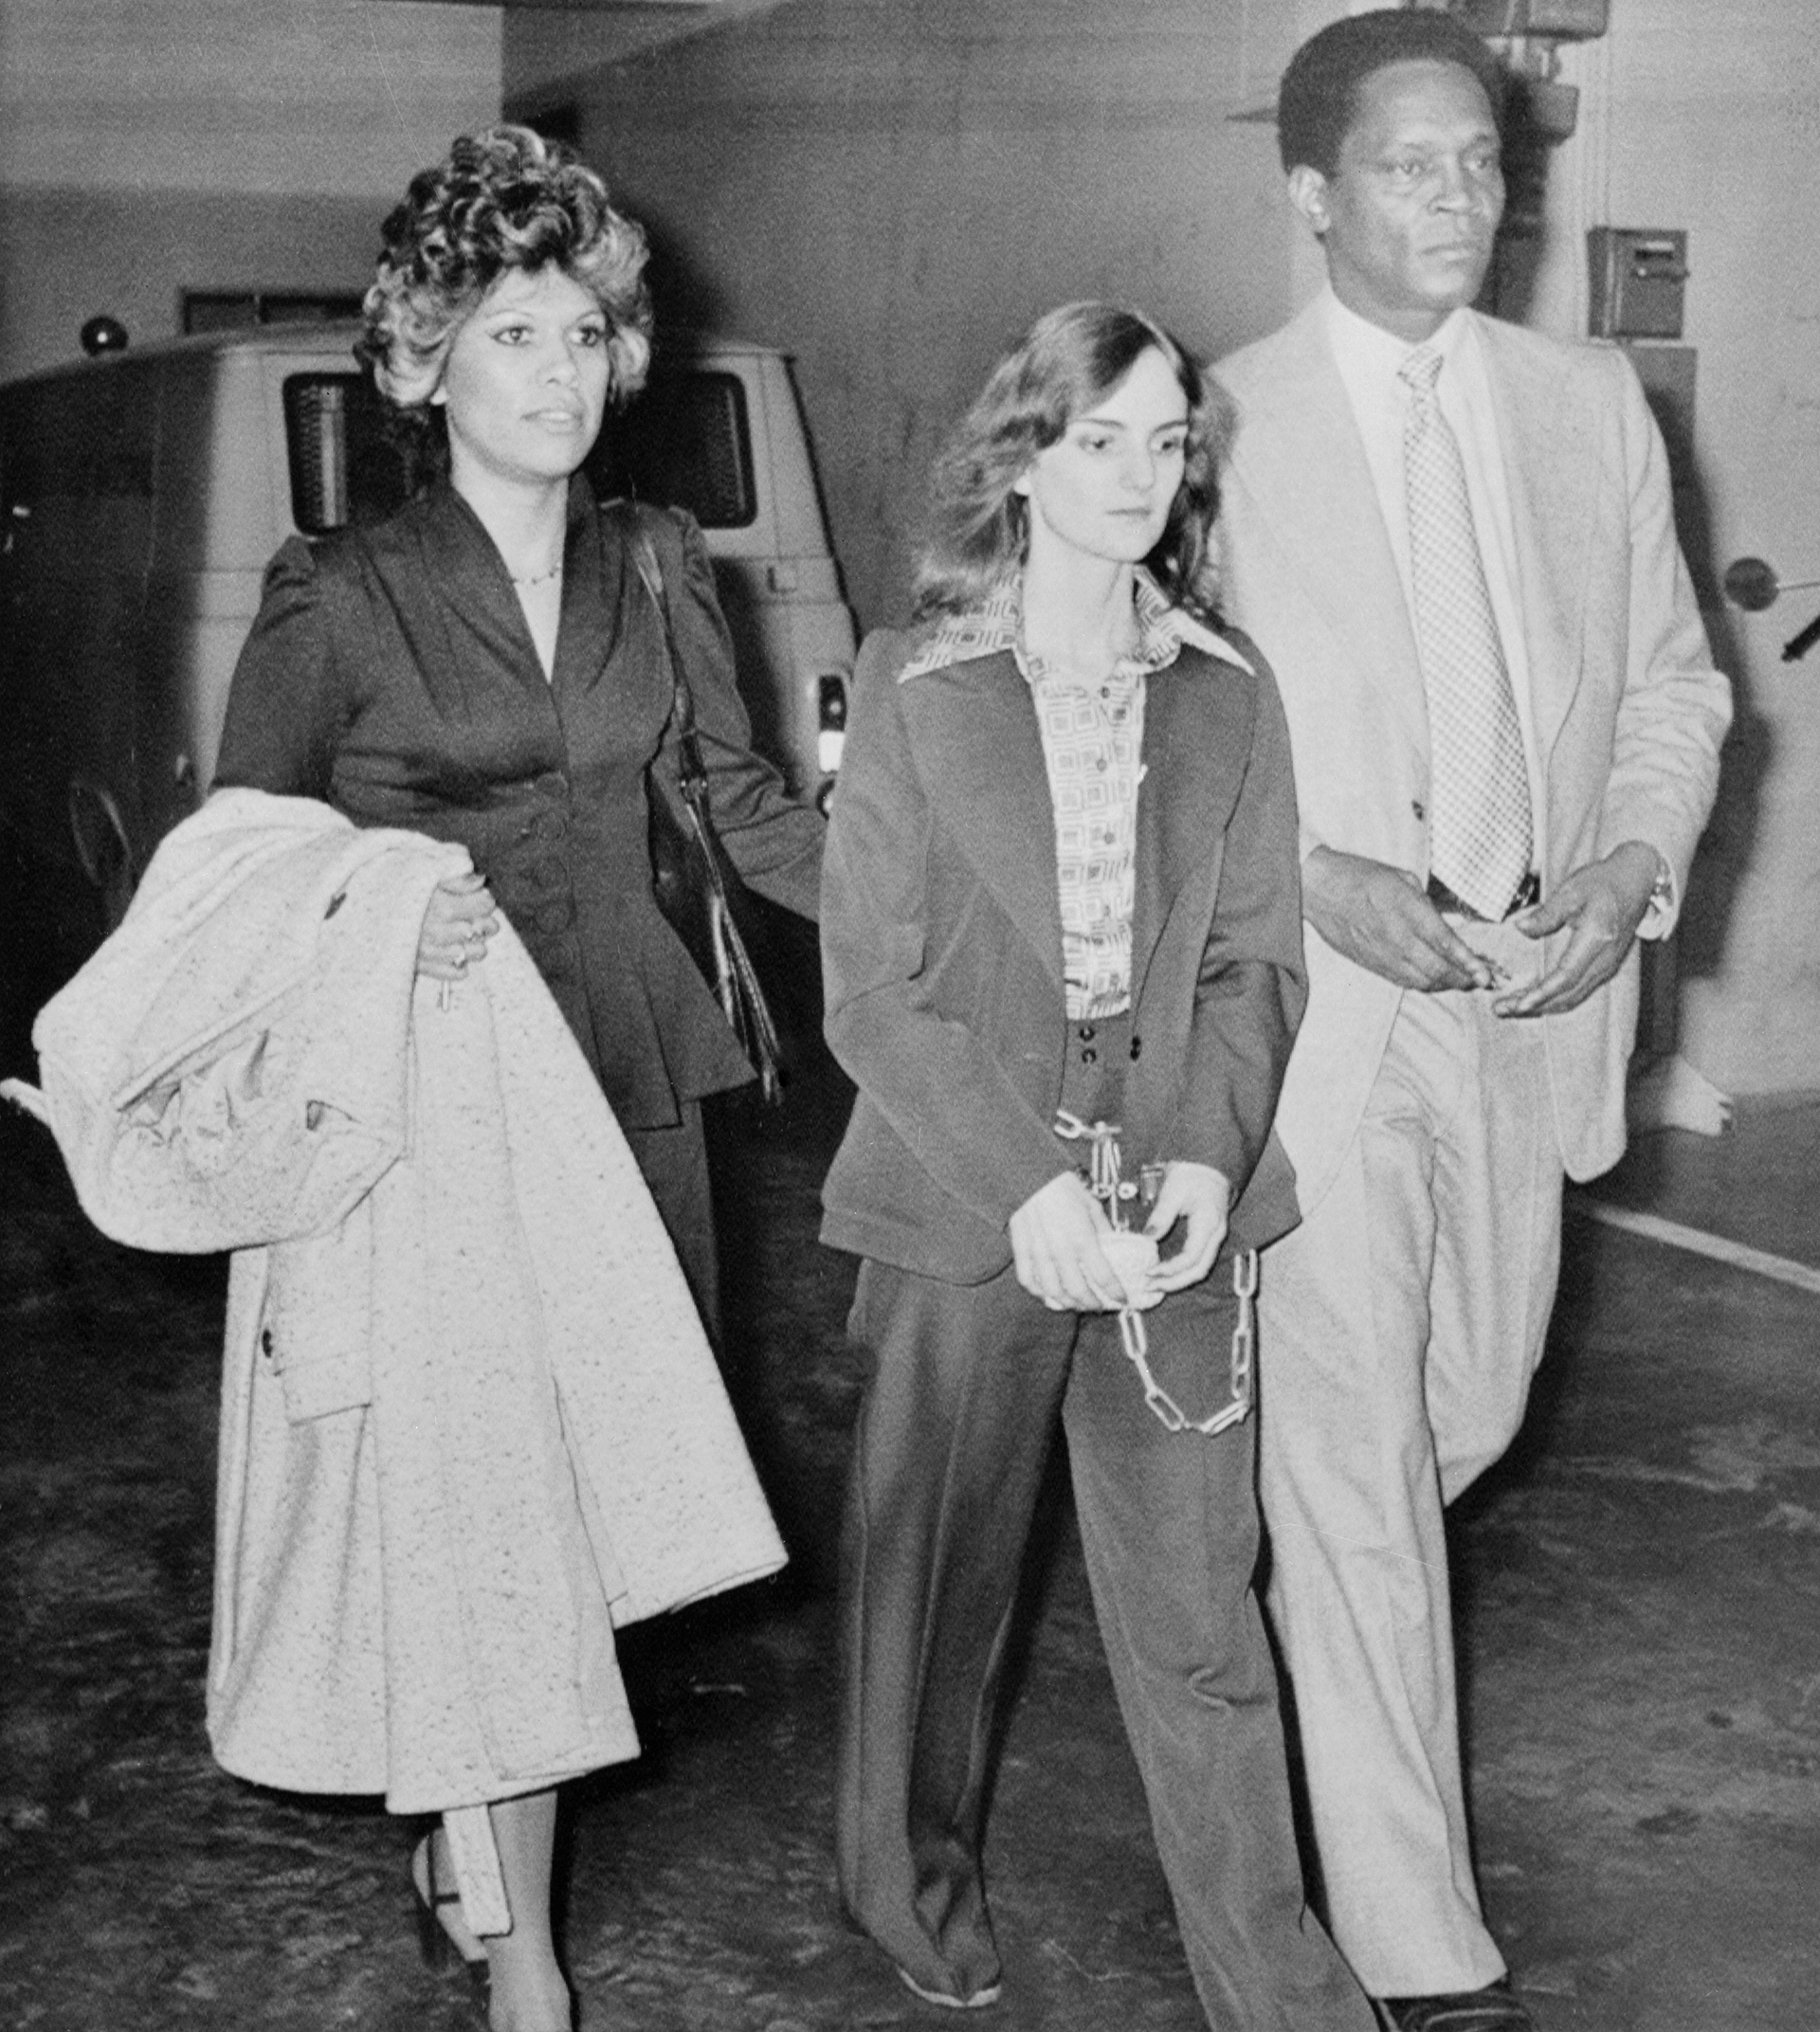 El 15 de septiembre de 1975 la policía detuvo, por fin, a Patty Hearst. La encontraron muy delgada, algo confusa, con dificultades en el habla. Uno de los policías que la arrestó dijo que parecía una zombie